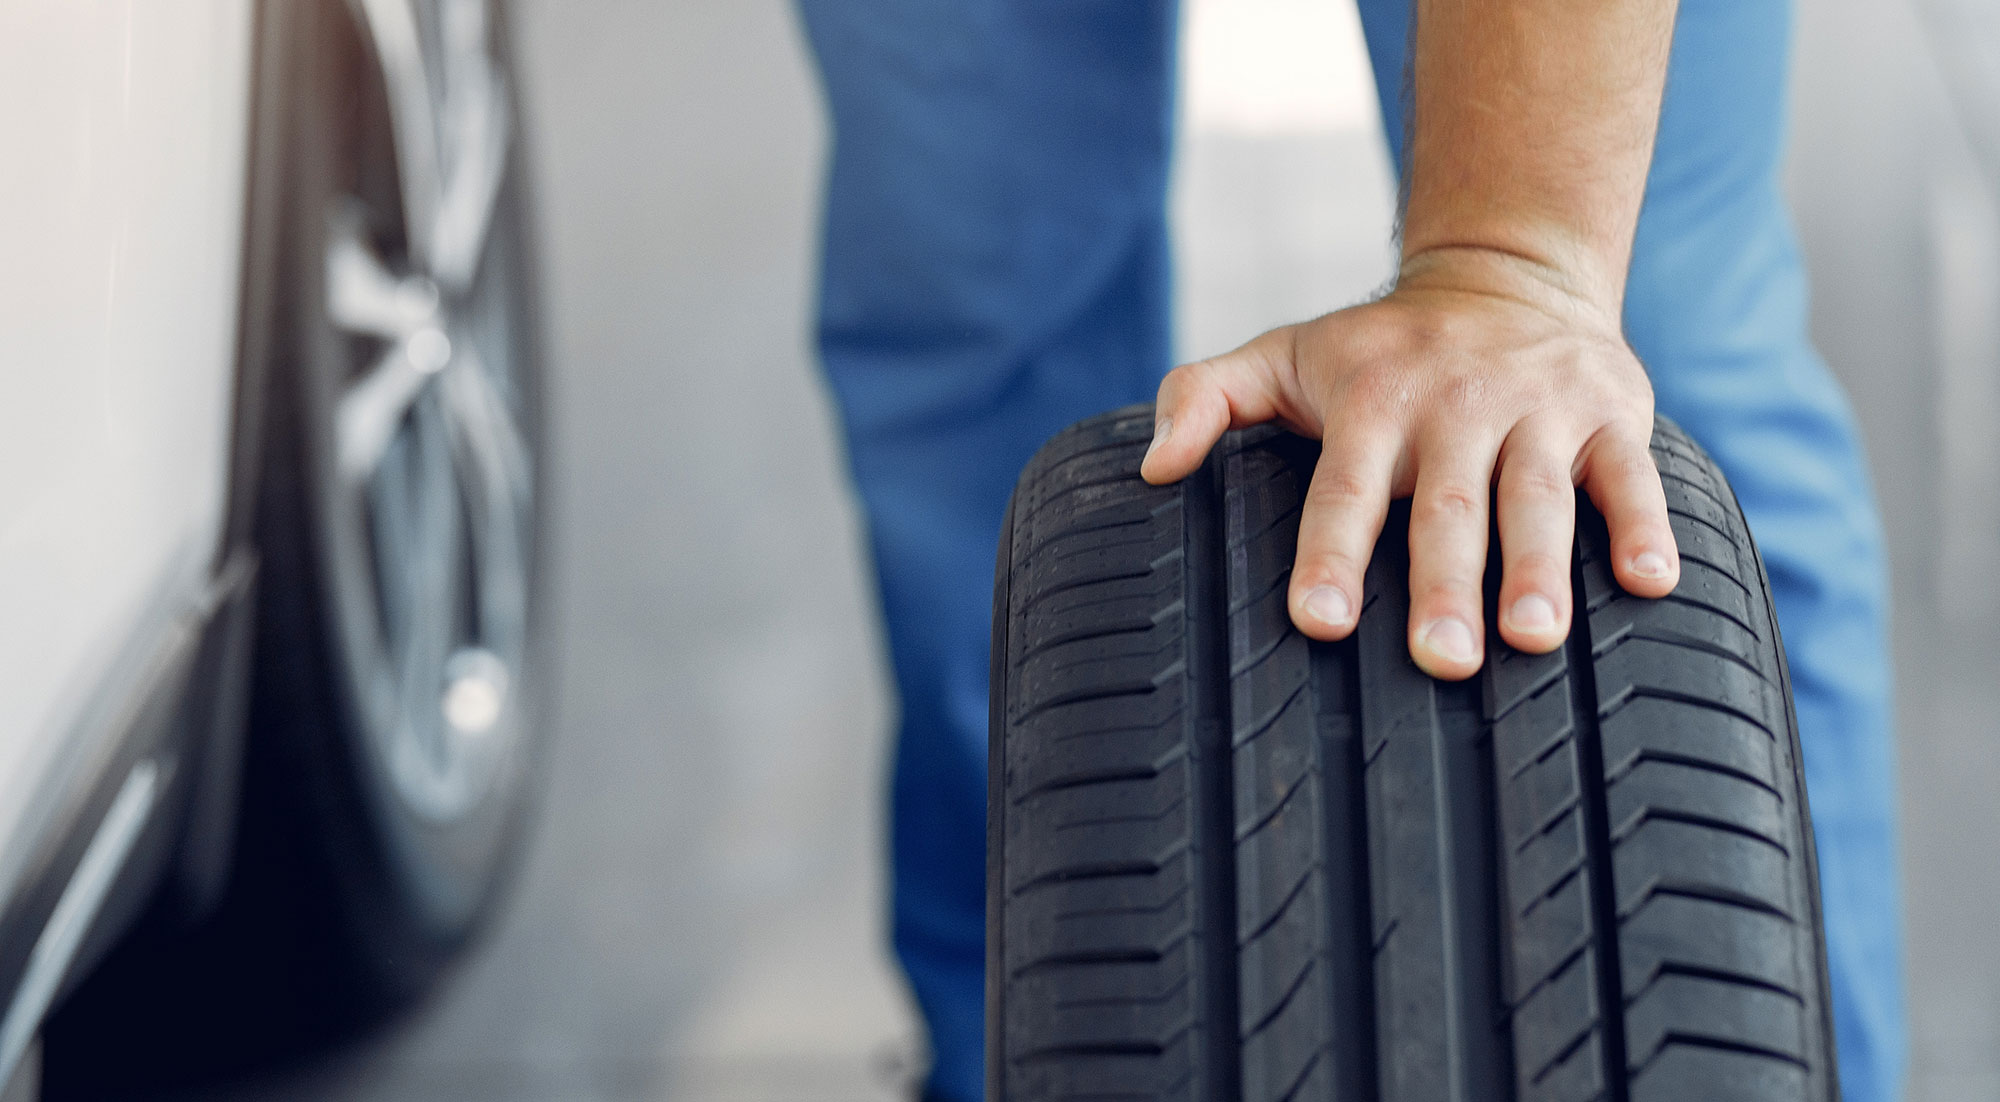 Neumáticos baratos: cómo elegirlos y evitar los posibles riesgos